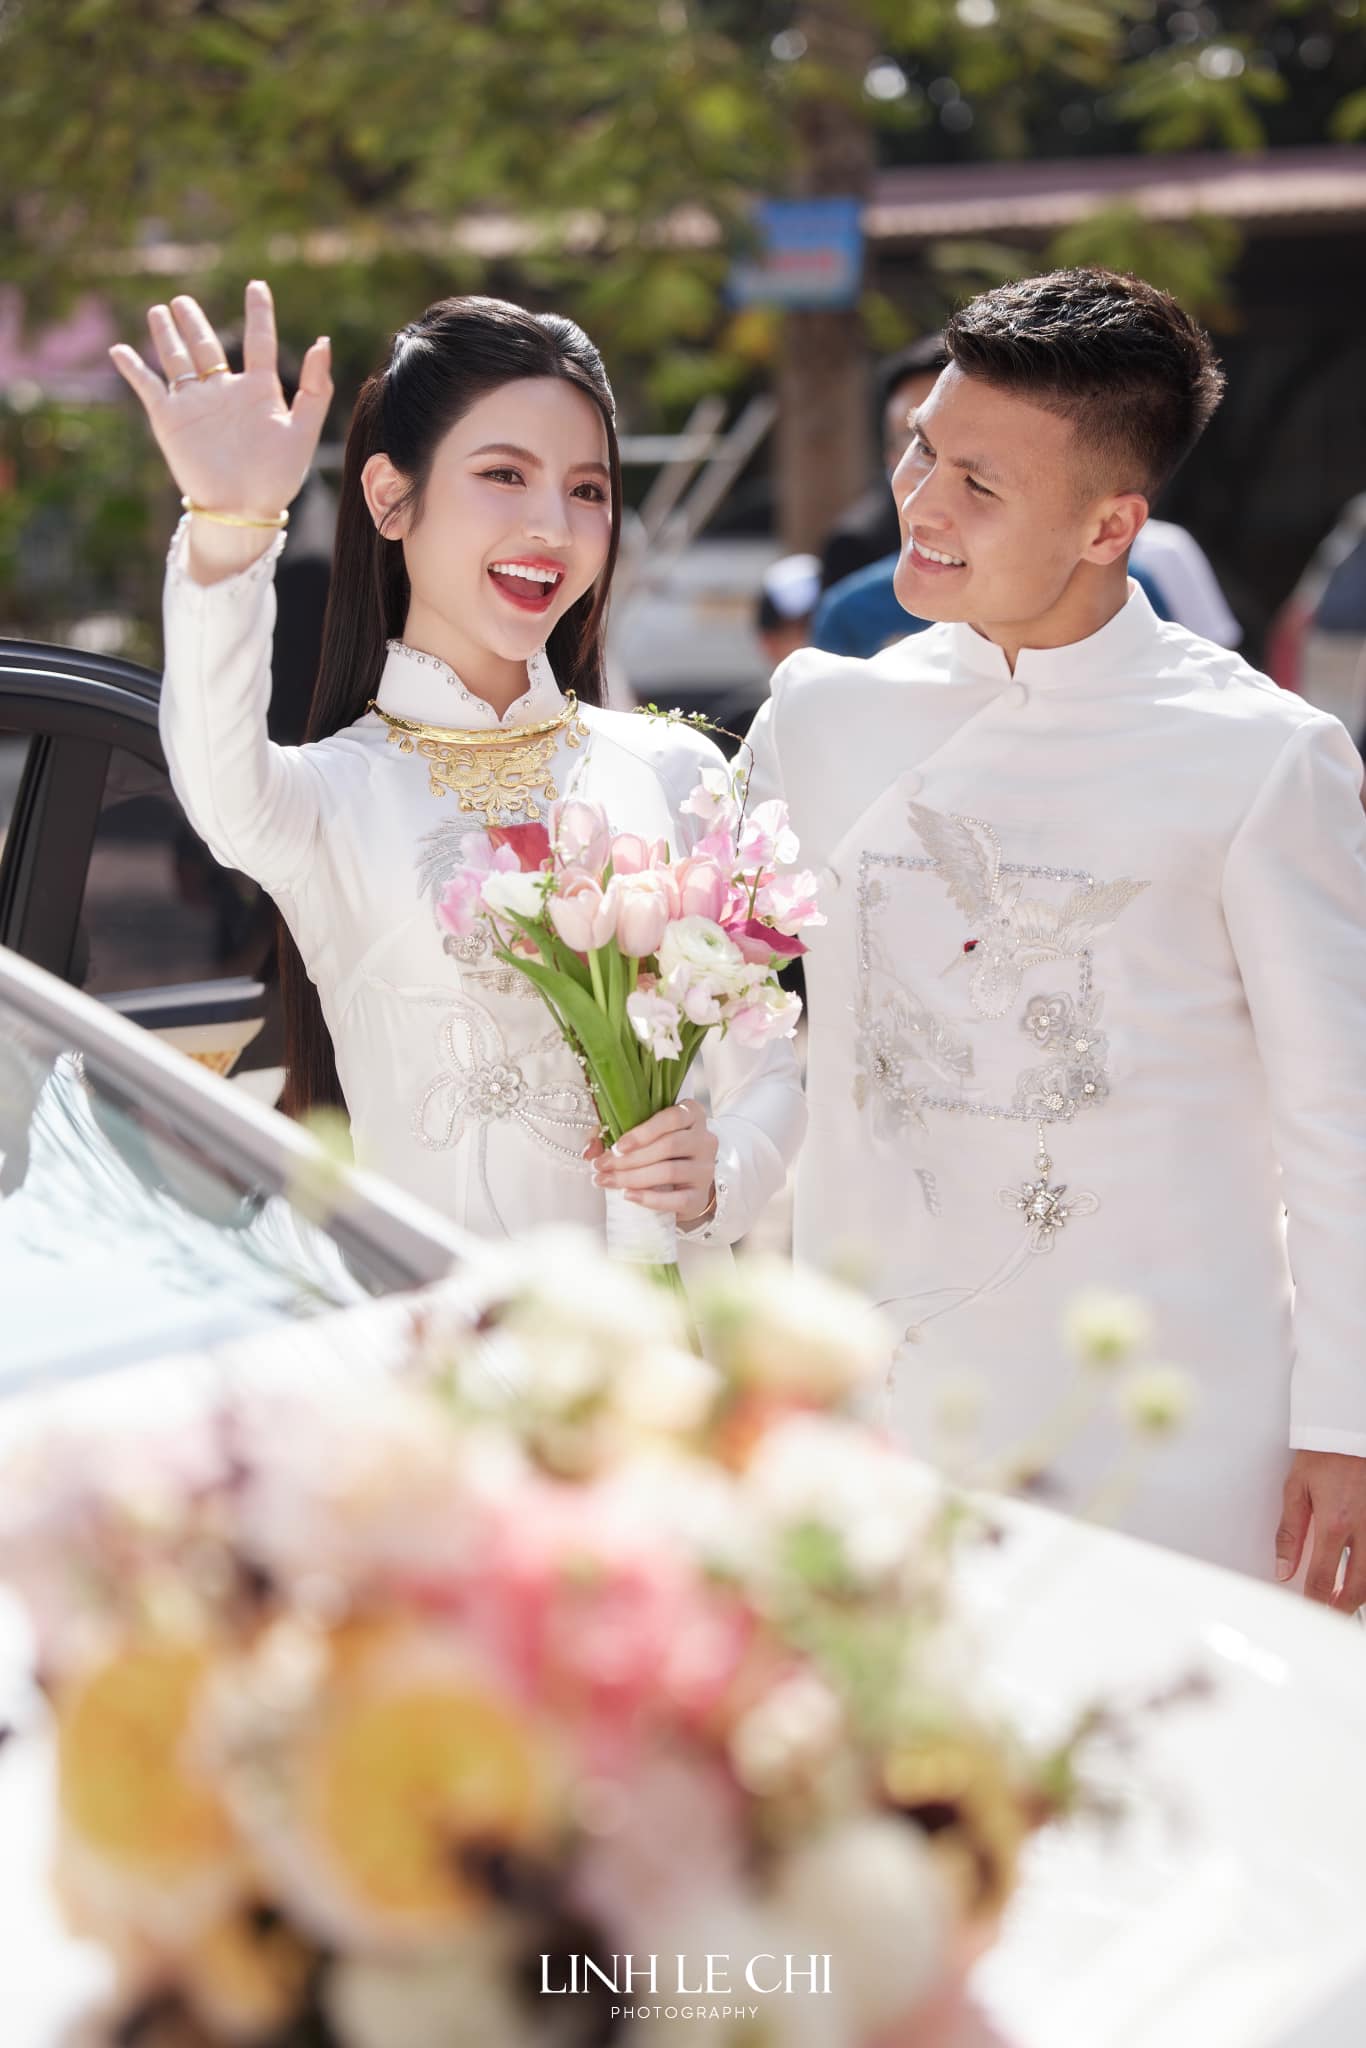 Cô dâu làng bóng đá Việt được tặng vàng ngày cưới hỏi, đoán xem của ai "nặng" nhất? - Ảnh 2.